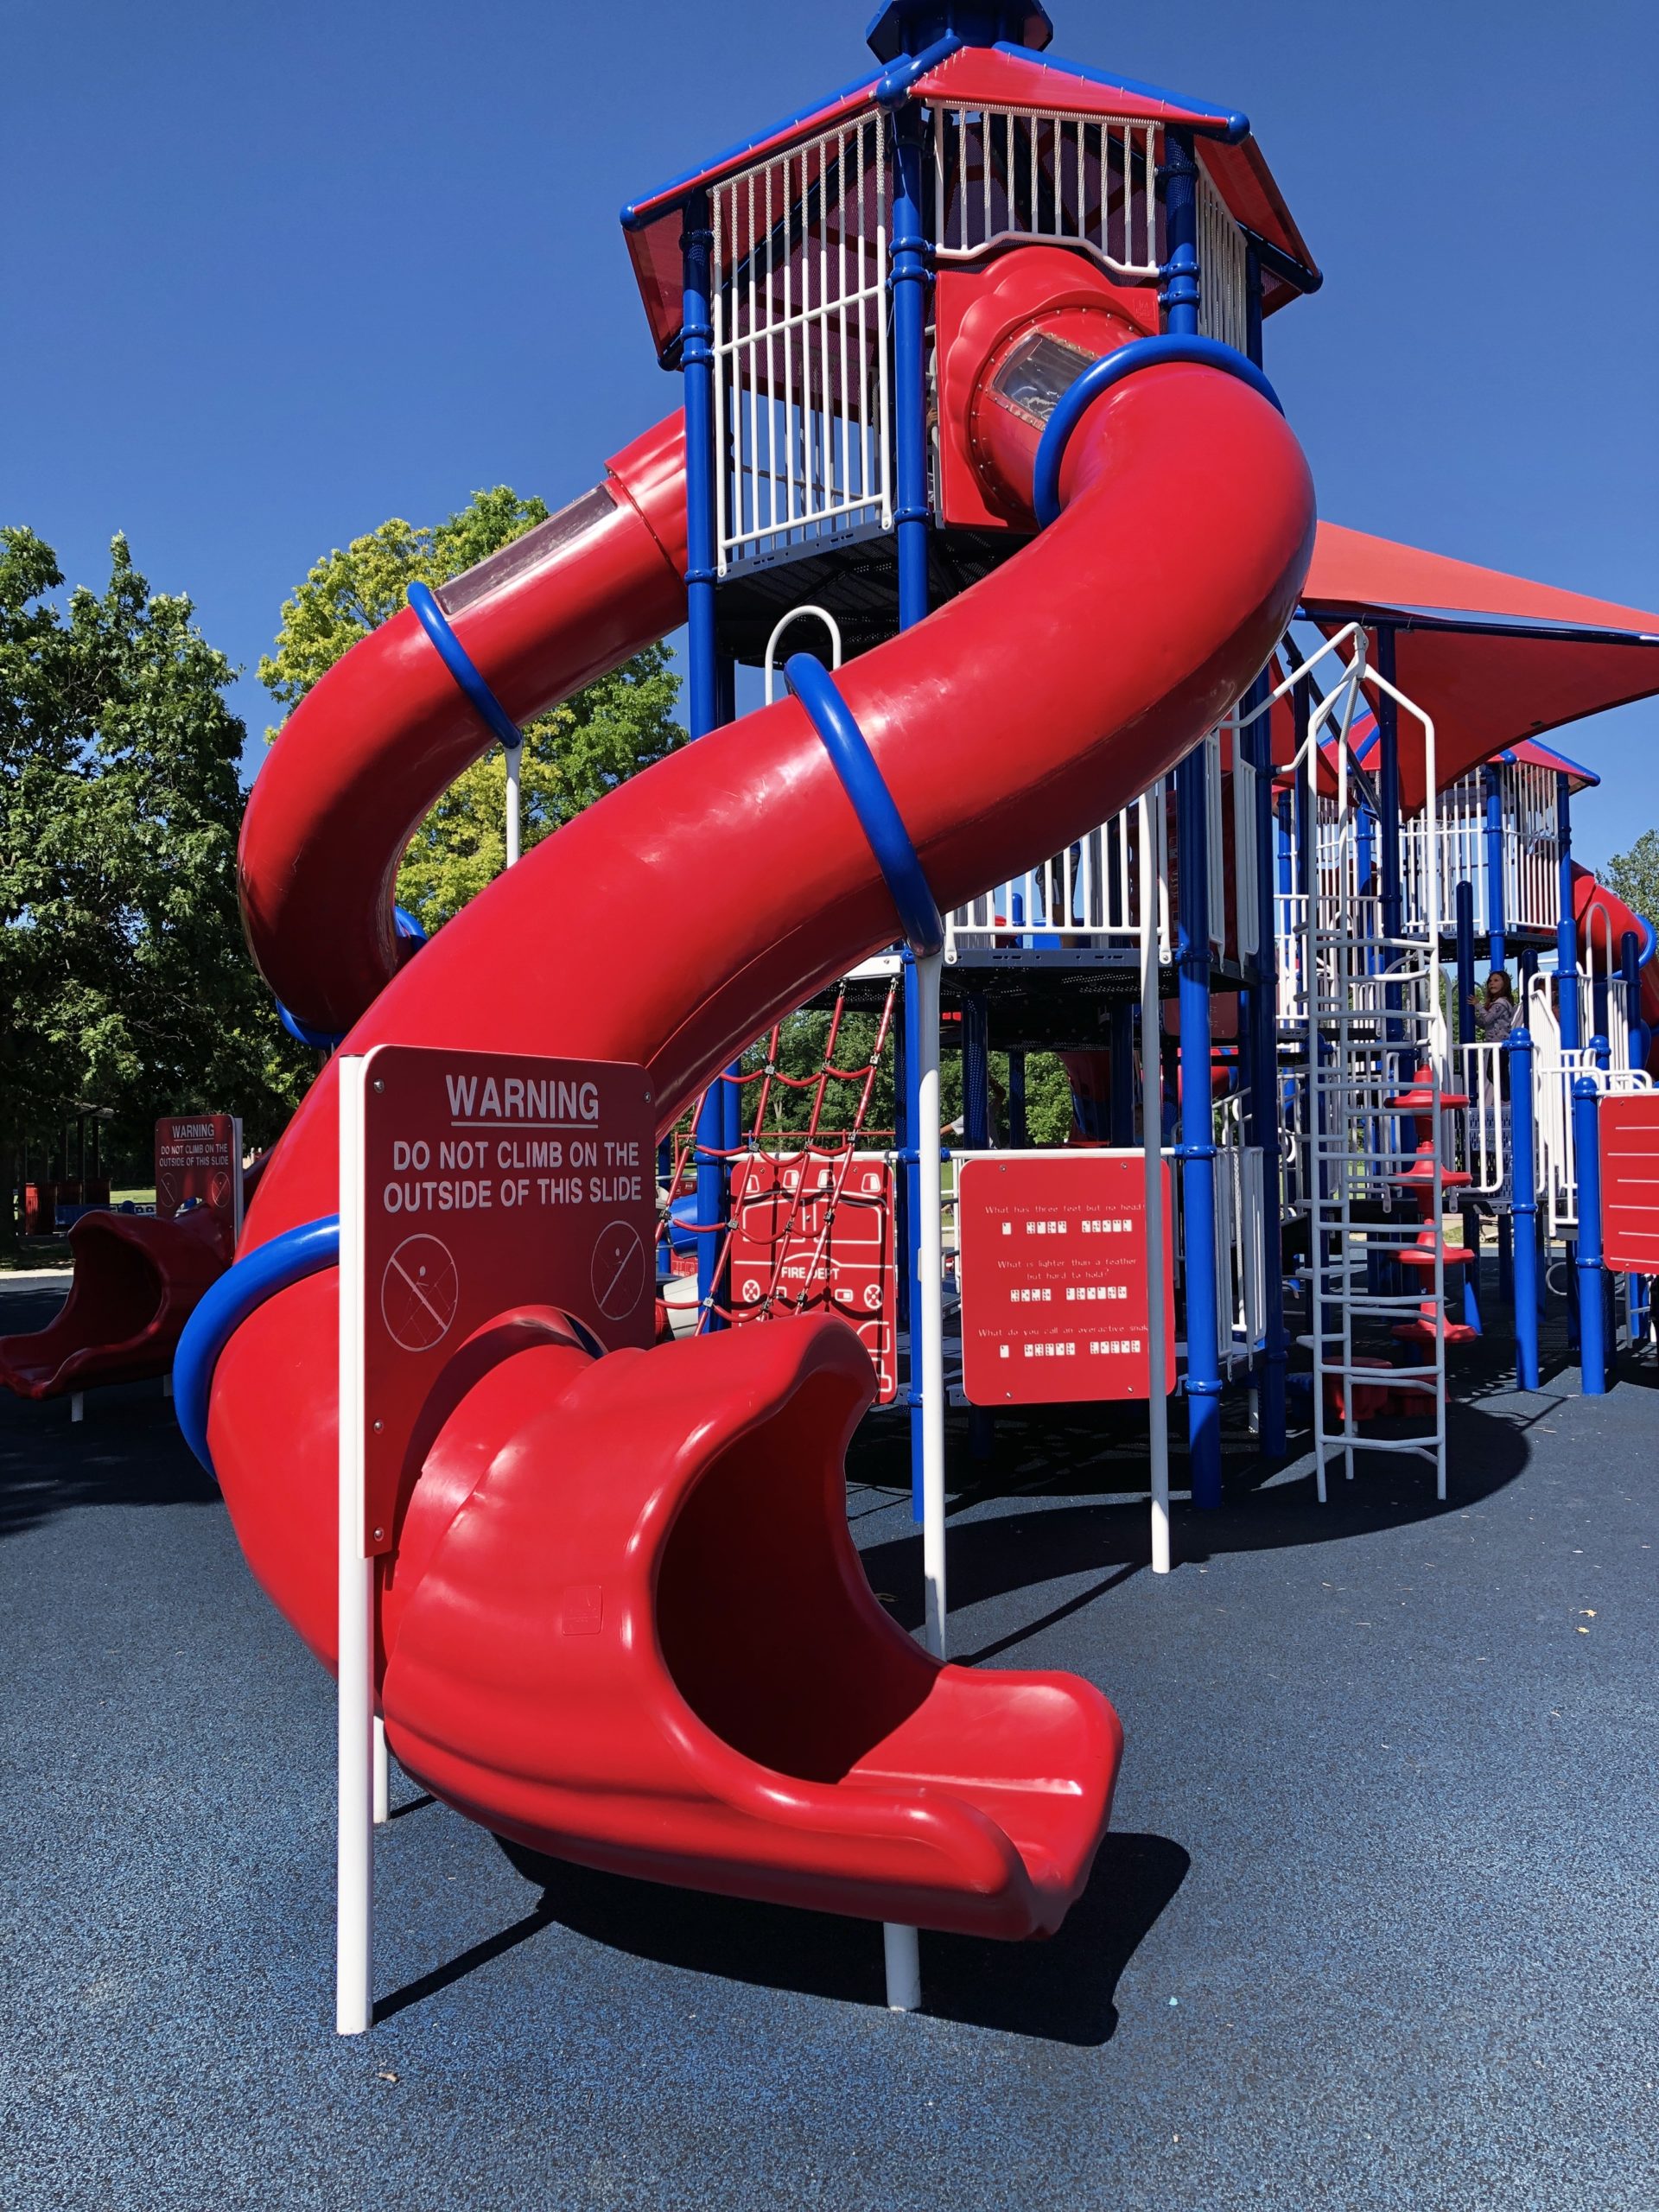 Twisty Slide at Rock Playground Hummel Park Playground